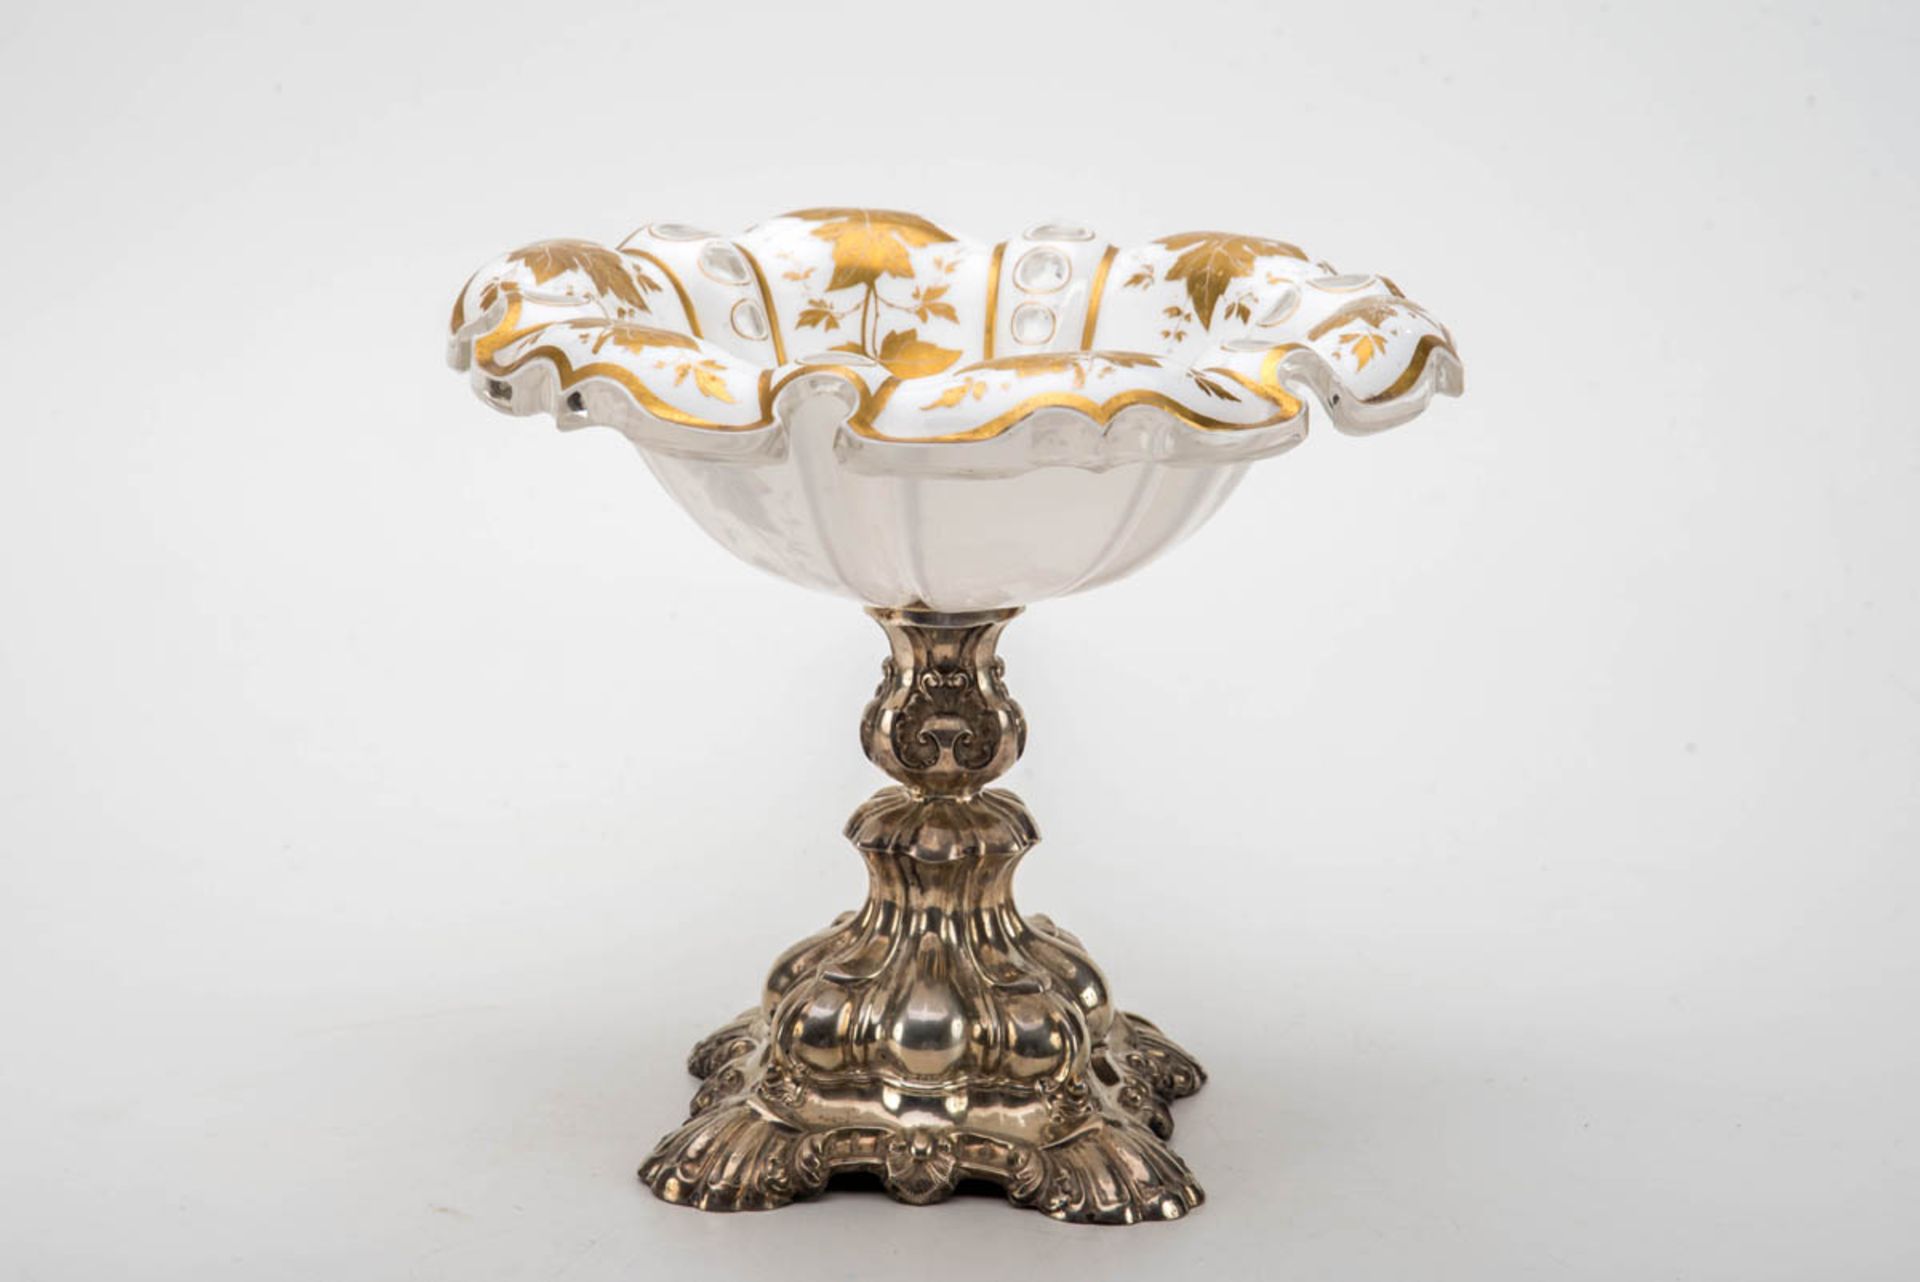 Tafelaufsatz, Biedermeier um 1850Silber, farbloses Glas mit Milchglasüberfang mit Gold bemalt. Auf